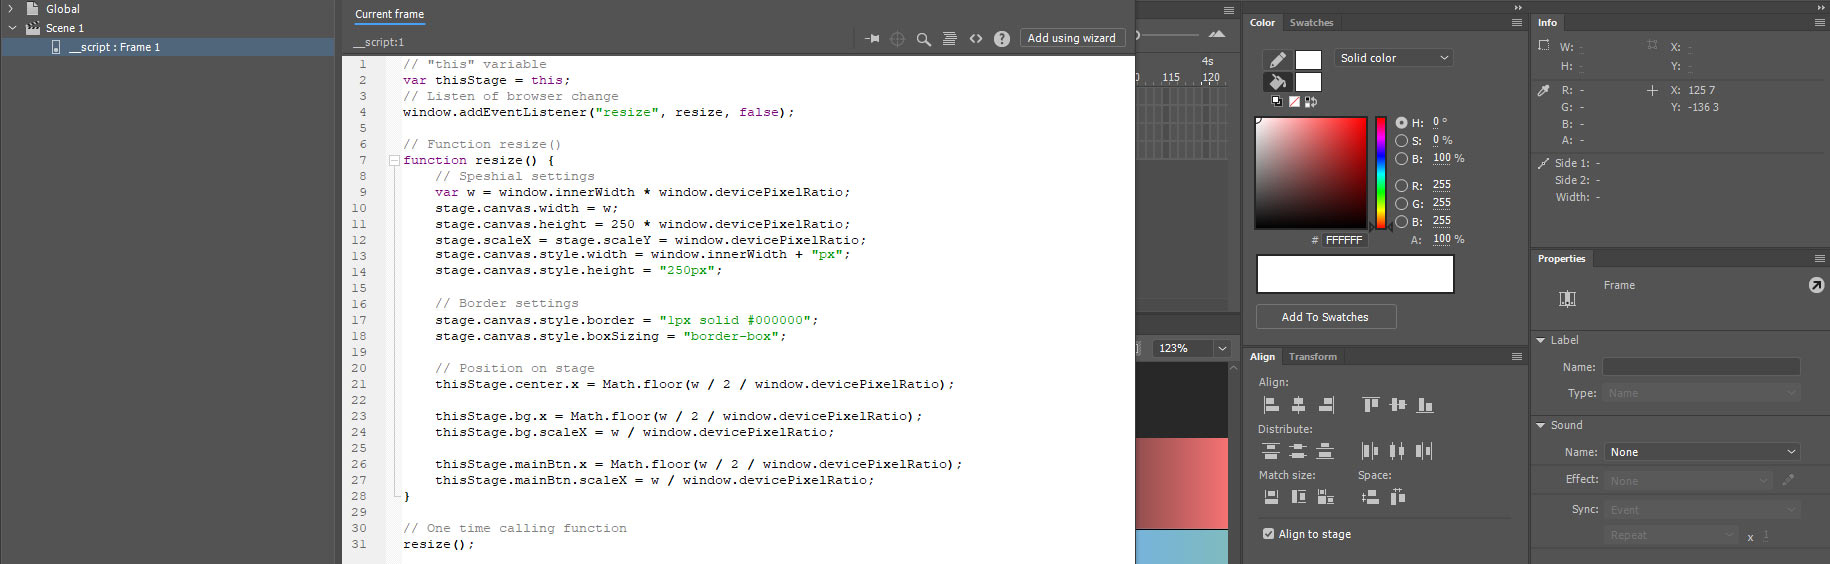 Скриншот из программы Adobe Animate. Итоговый код html растяжки с тянущимся фоном и кнопкой